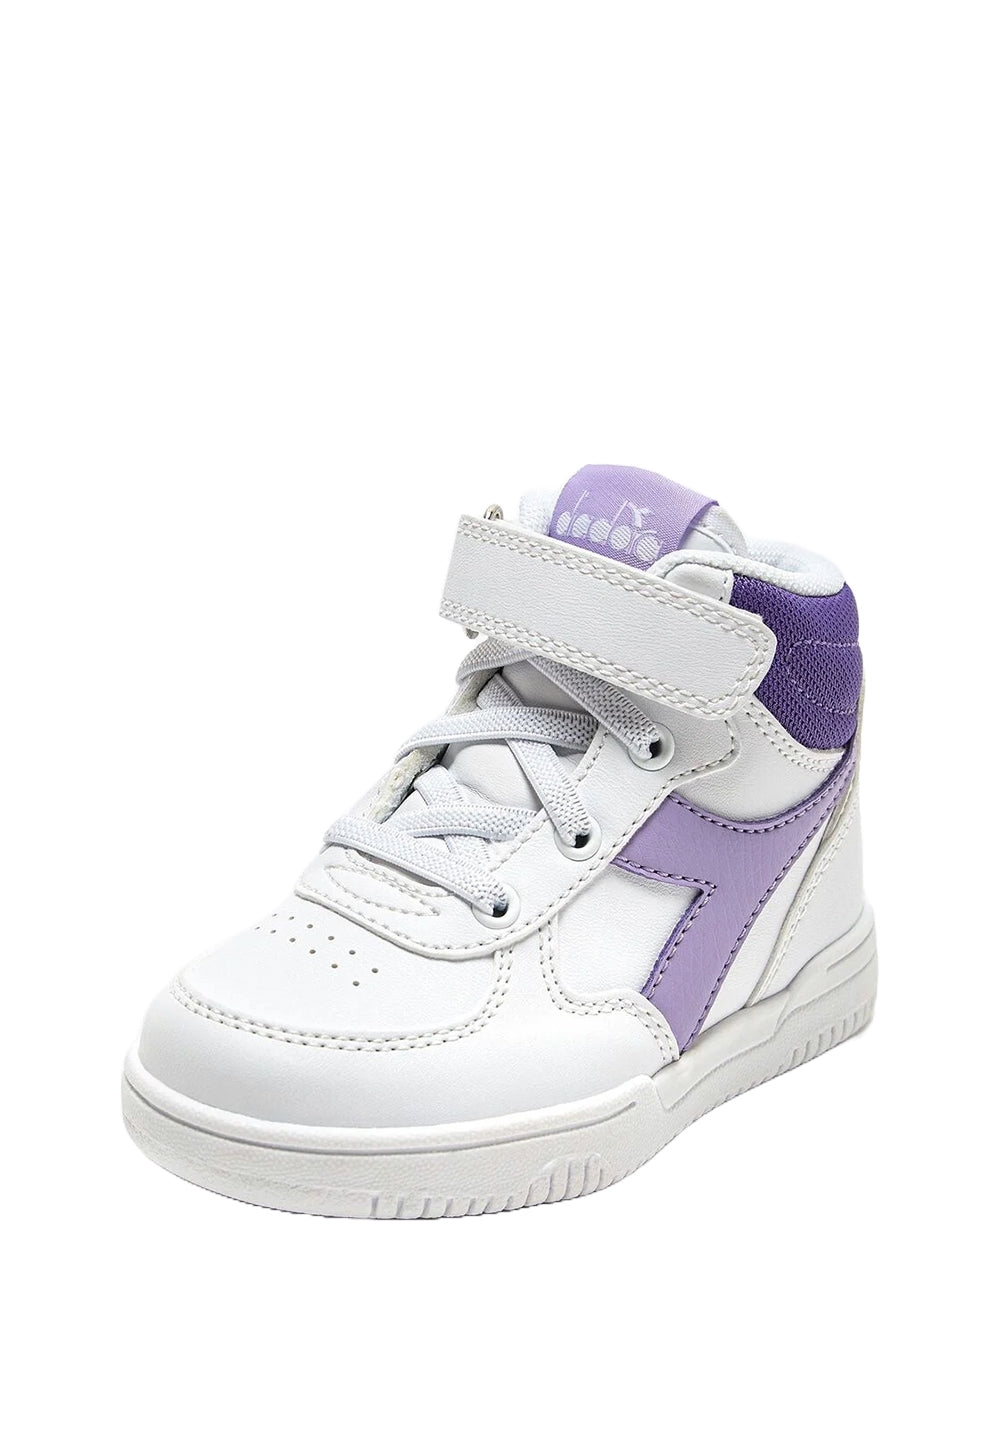 Weiß-lila Schuhe für Mädchen